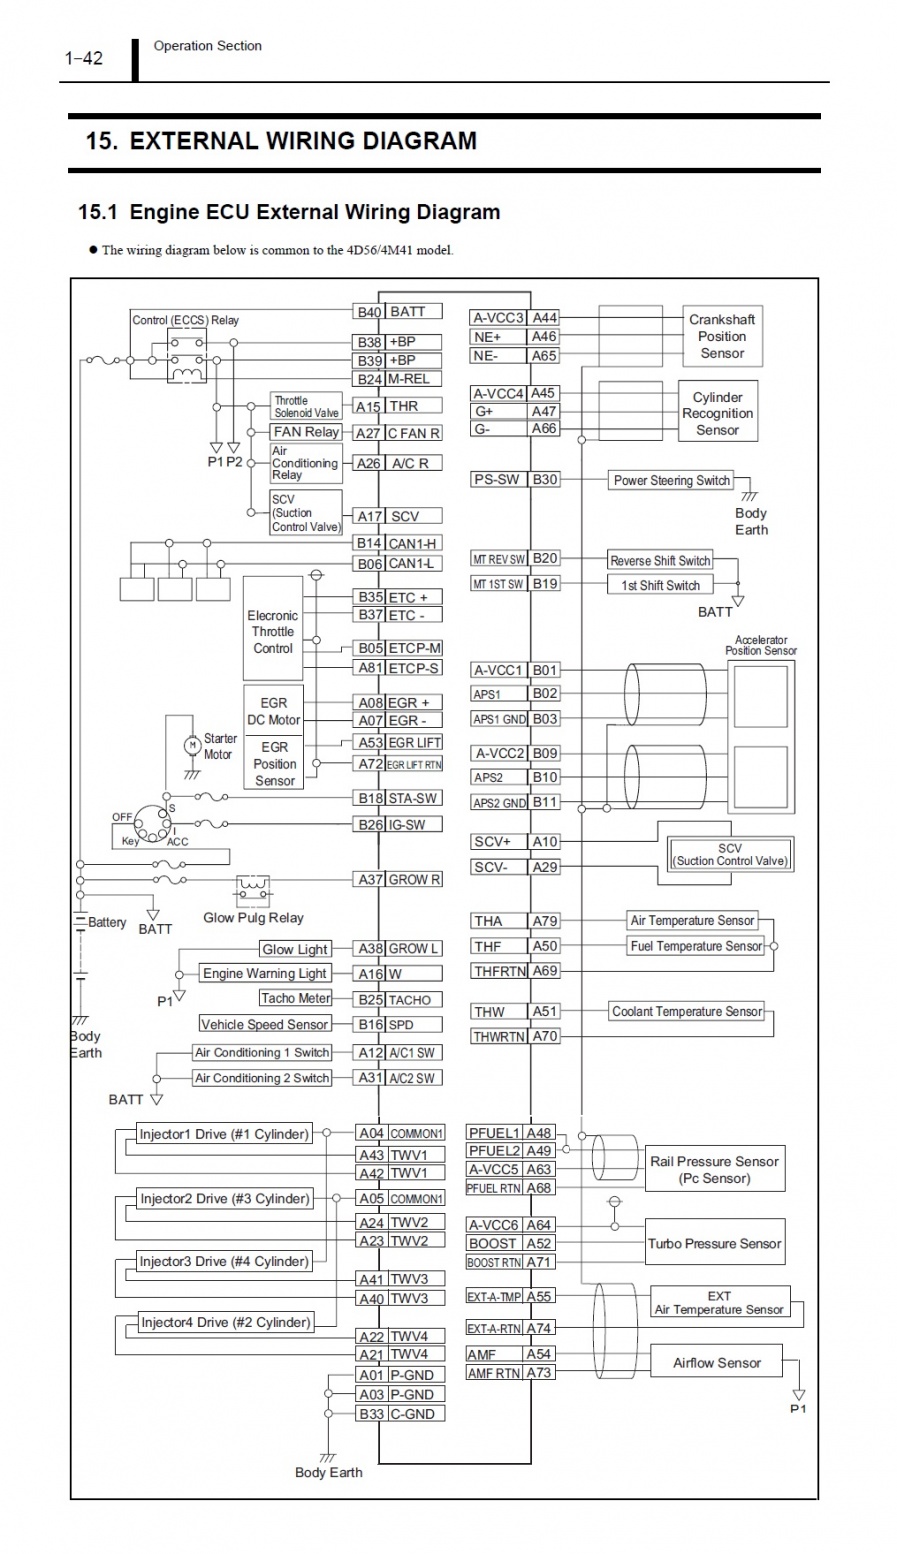 ชื่อ:  Engine ECU External Wiring Diagram.jpg
ครั้ง: 3377
ขนาด:  356.8 กิโลไบต์